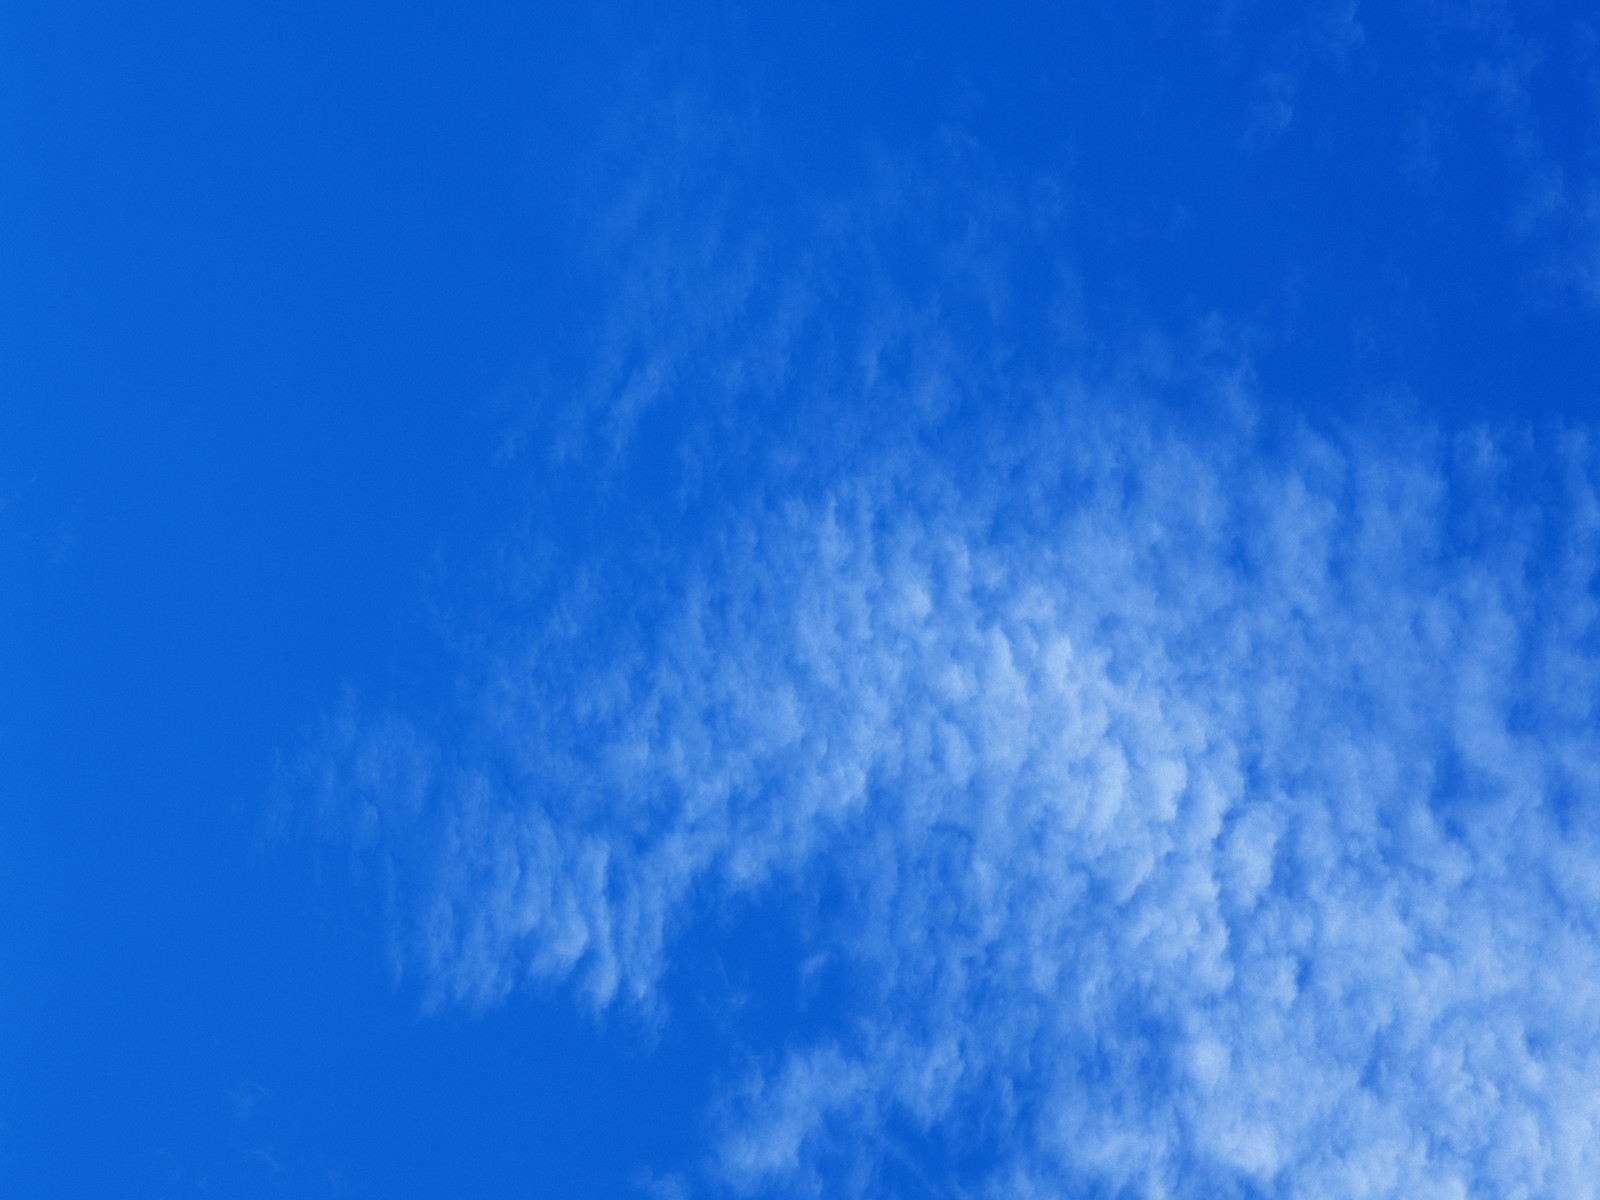 壁纸1600x1200 白云朵朵 蓝天白云壁纸壁纸 蔚蓝天空-蓝天白云壁纸壁纸 蔚蓝天空-蓝天白云壁纸图片 蔚蓝天空-蓝天白云壁纸素材 风景壁纸 风景图库 风景图片素材桌面壁纸